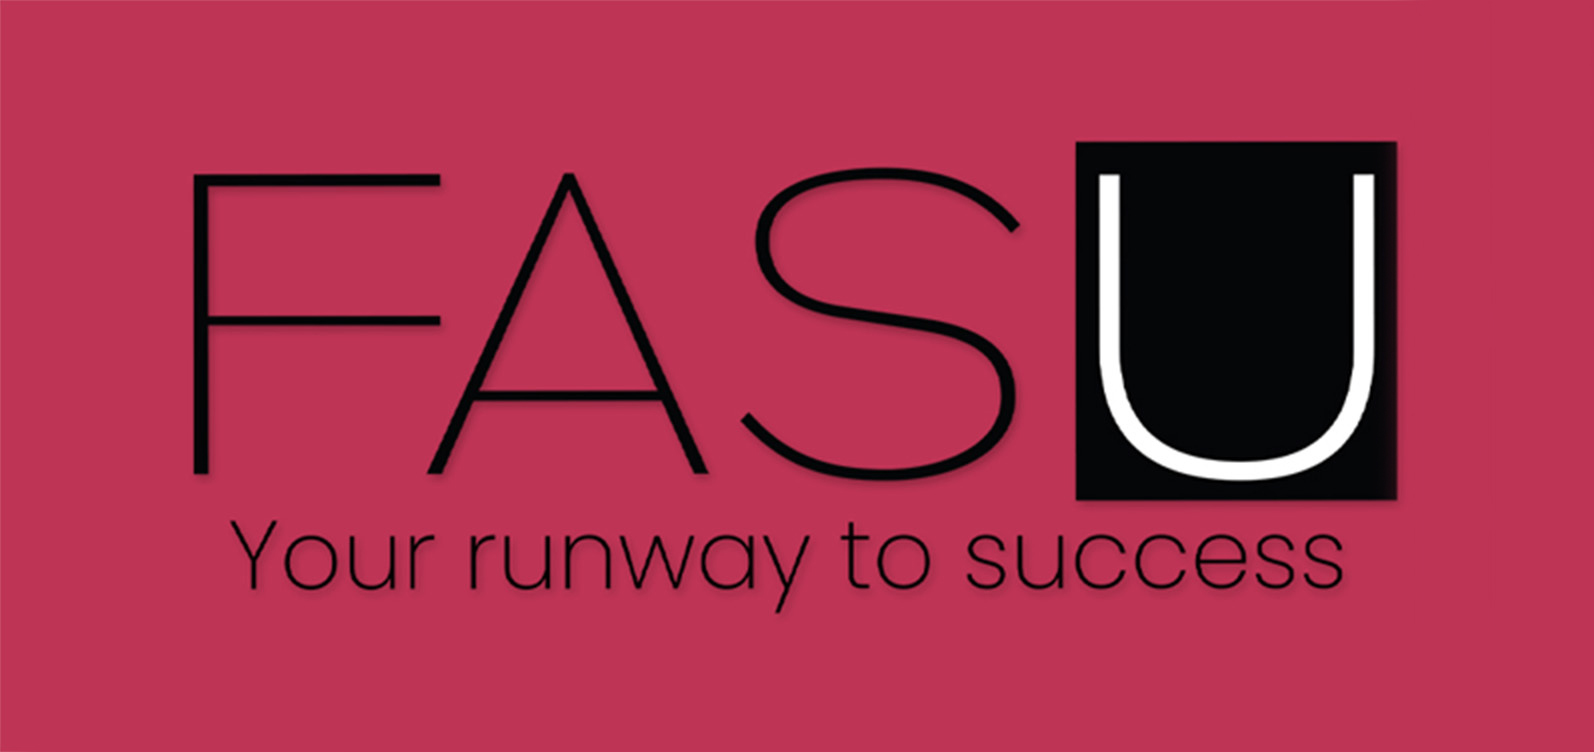 FASU | Your runway to success